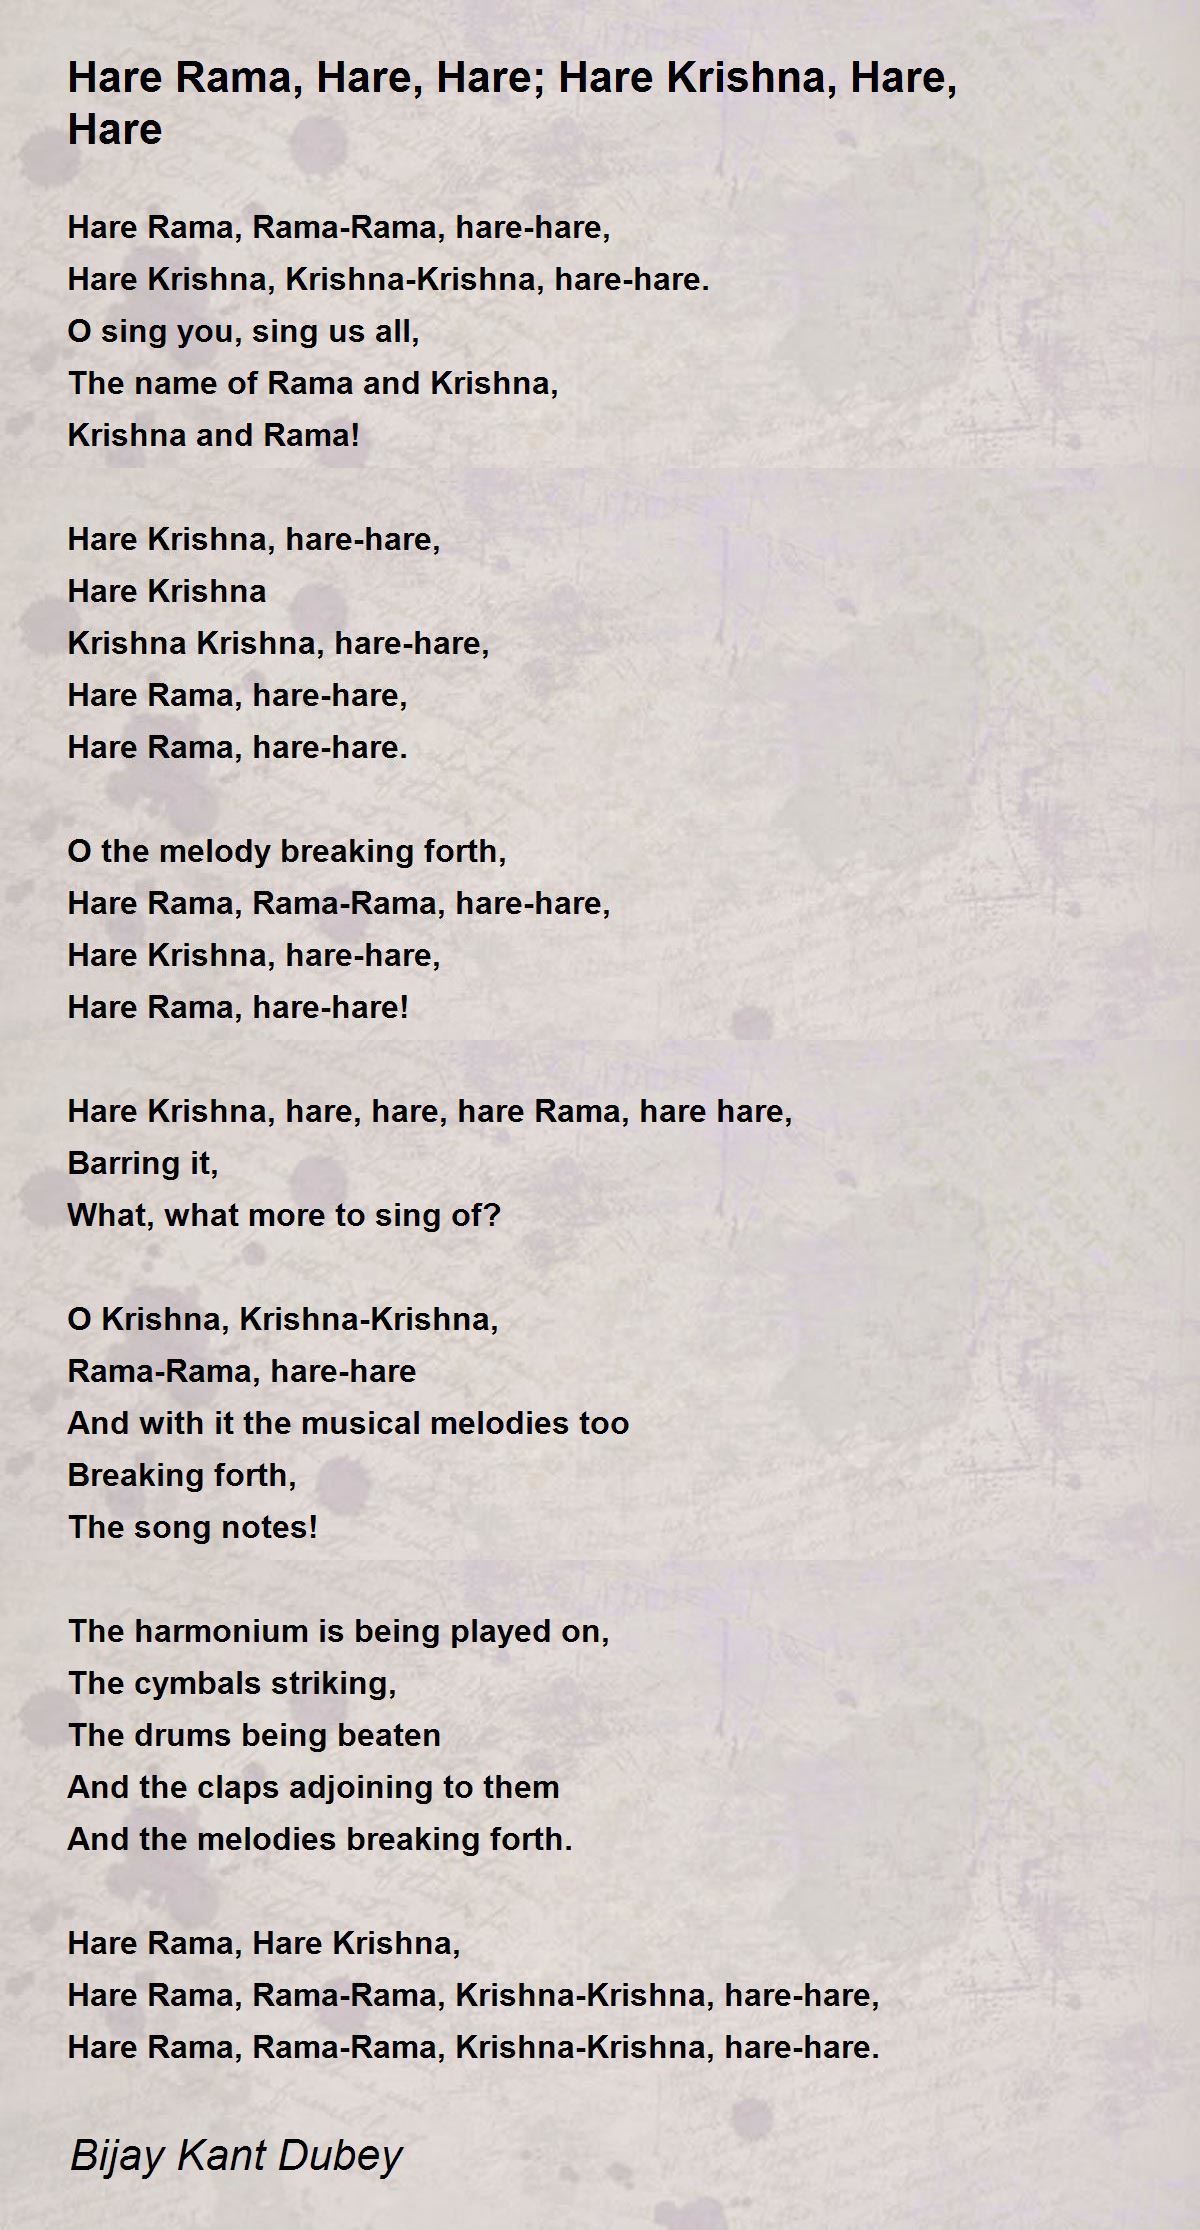 Hare Krishna hare Krishna Krishna Krishna hare hare, hare rama